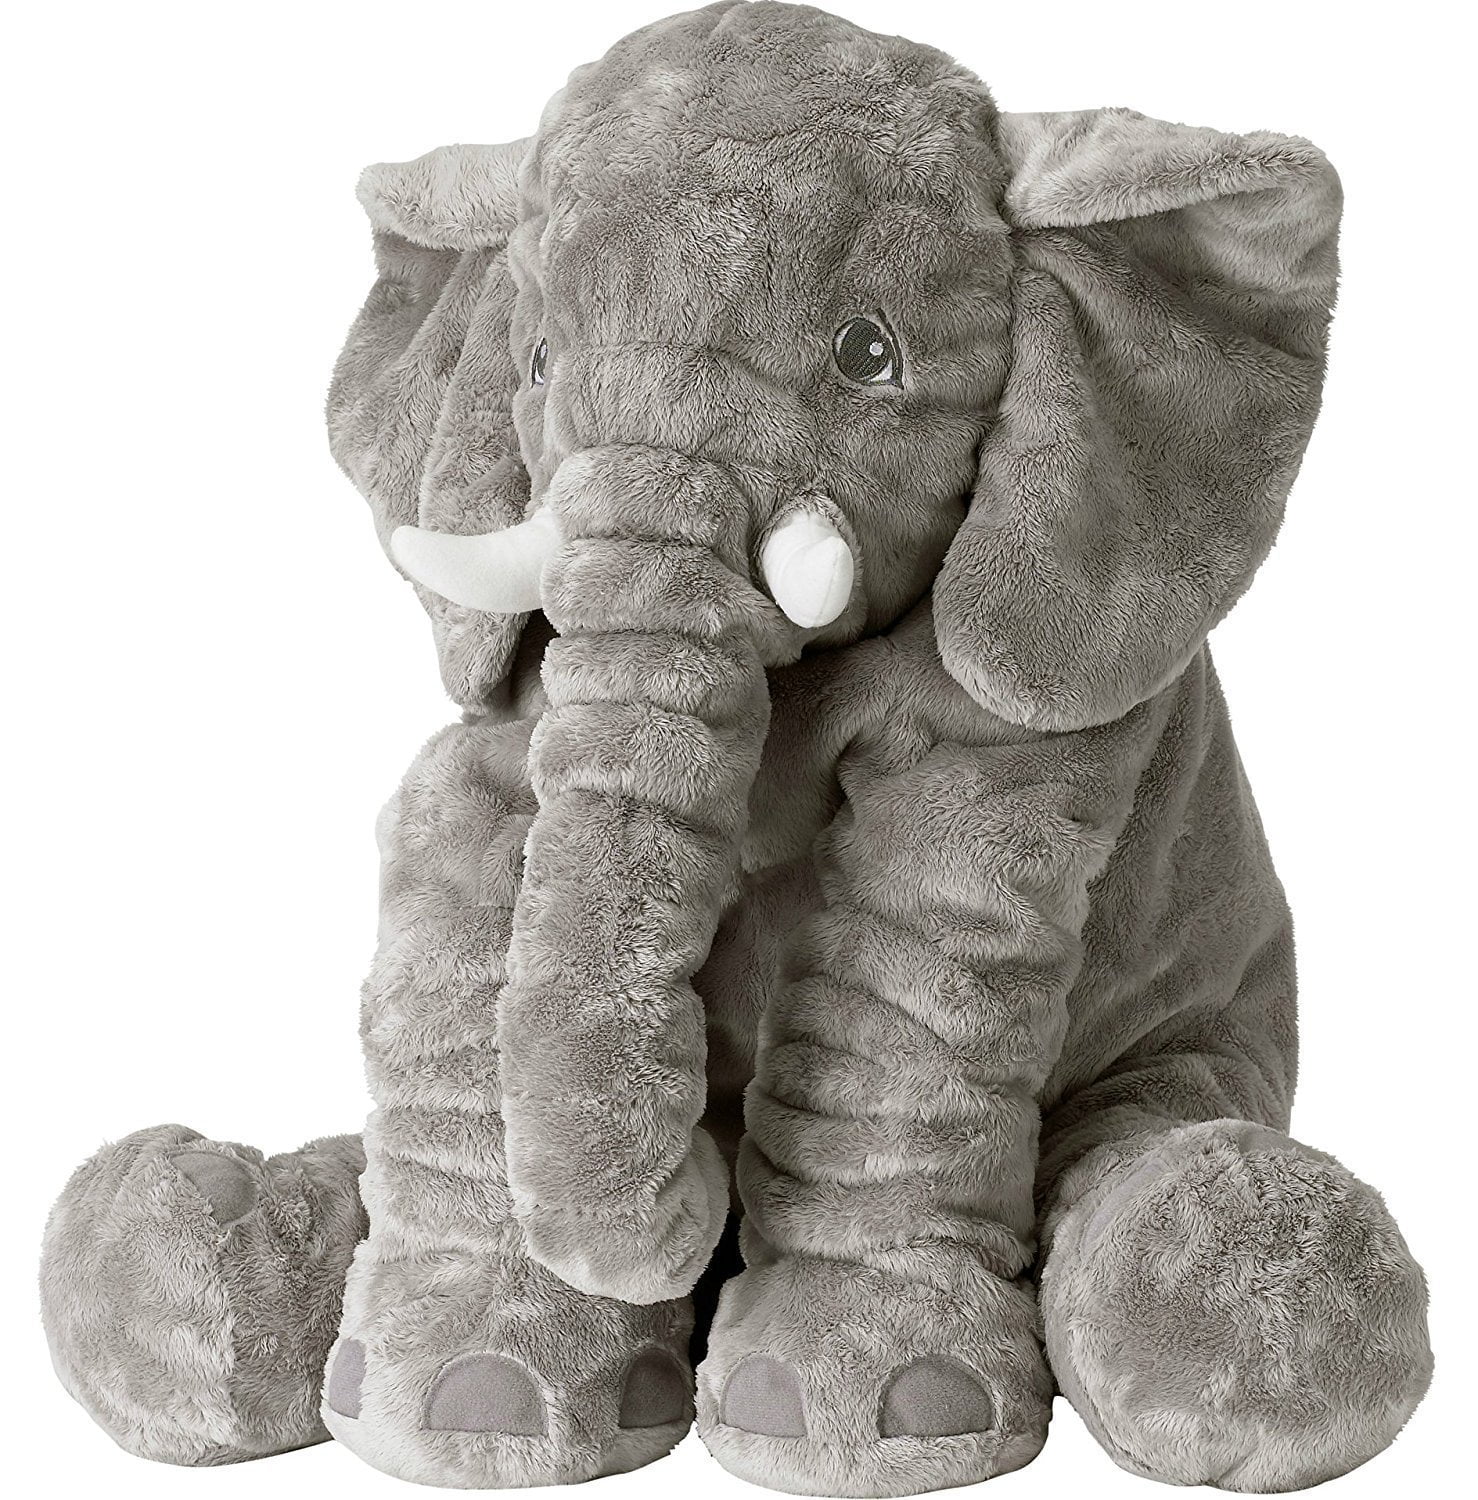 NEW Large Jumbo Elephant Stuffed Animal Plush Child’s Soft Toy 